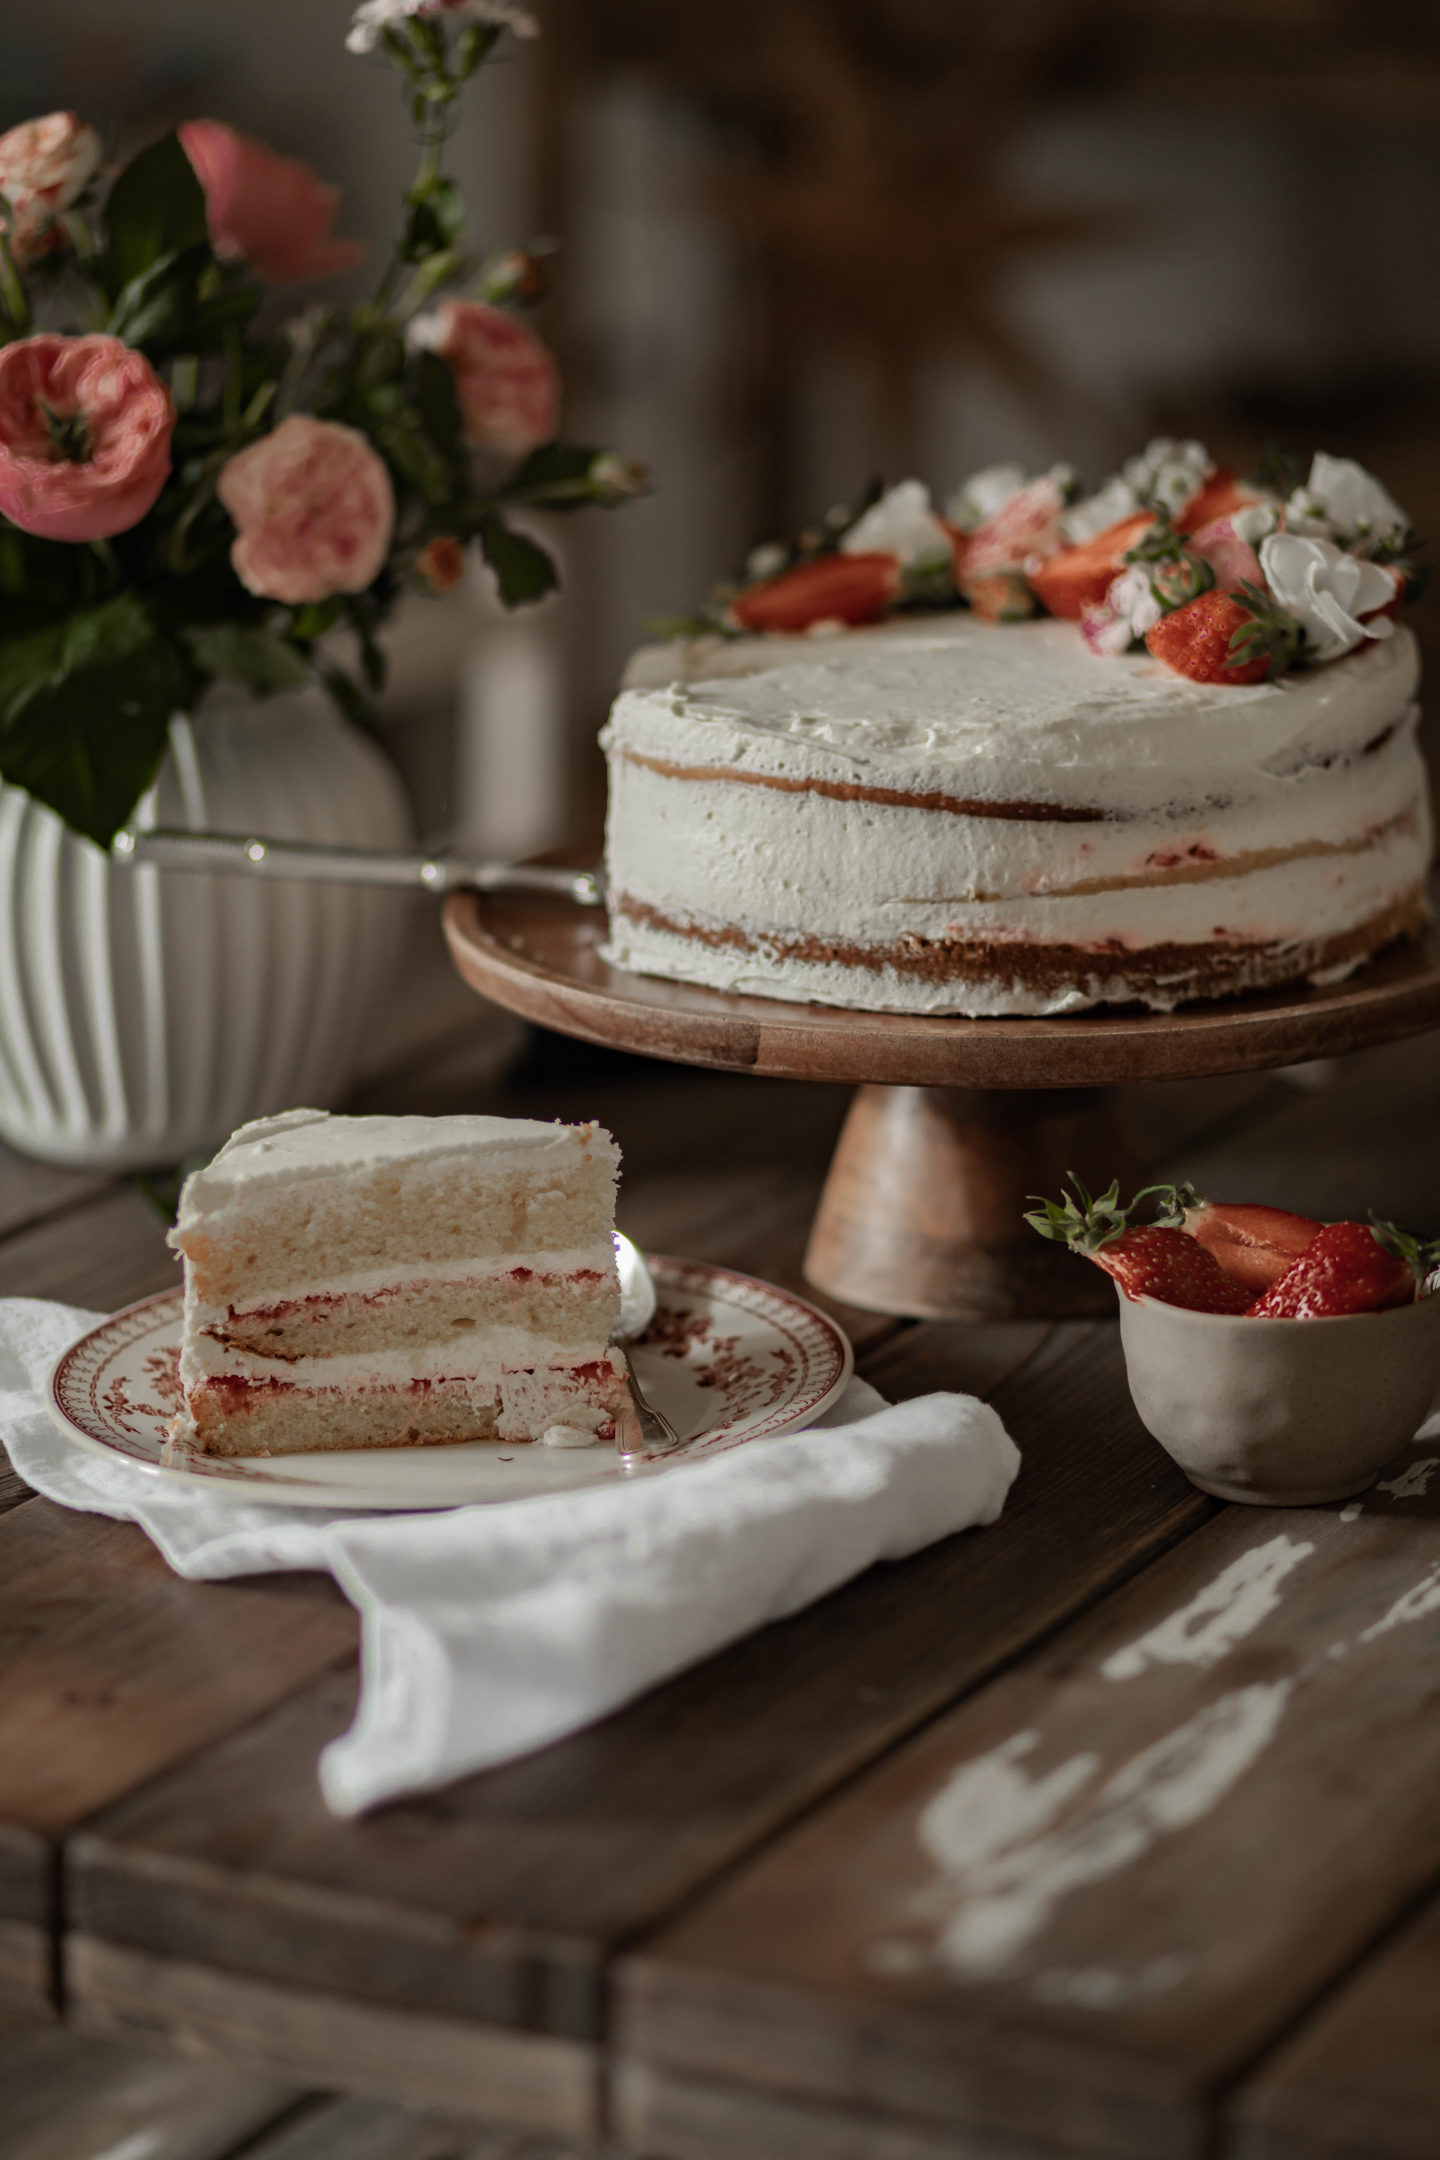 Naked cake fraises & chantilly mascarpone